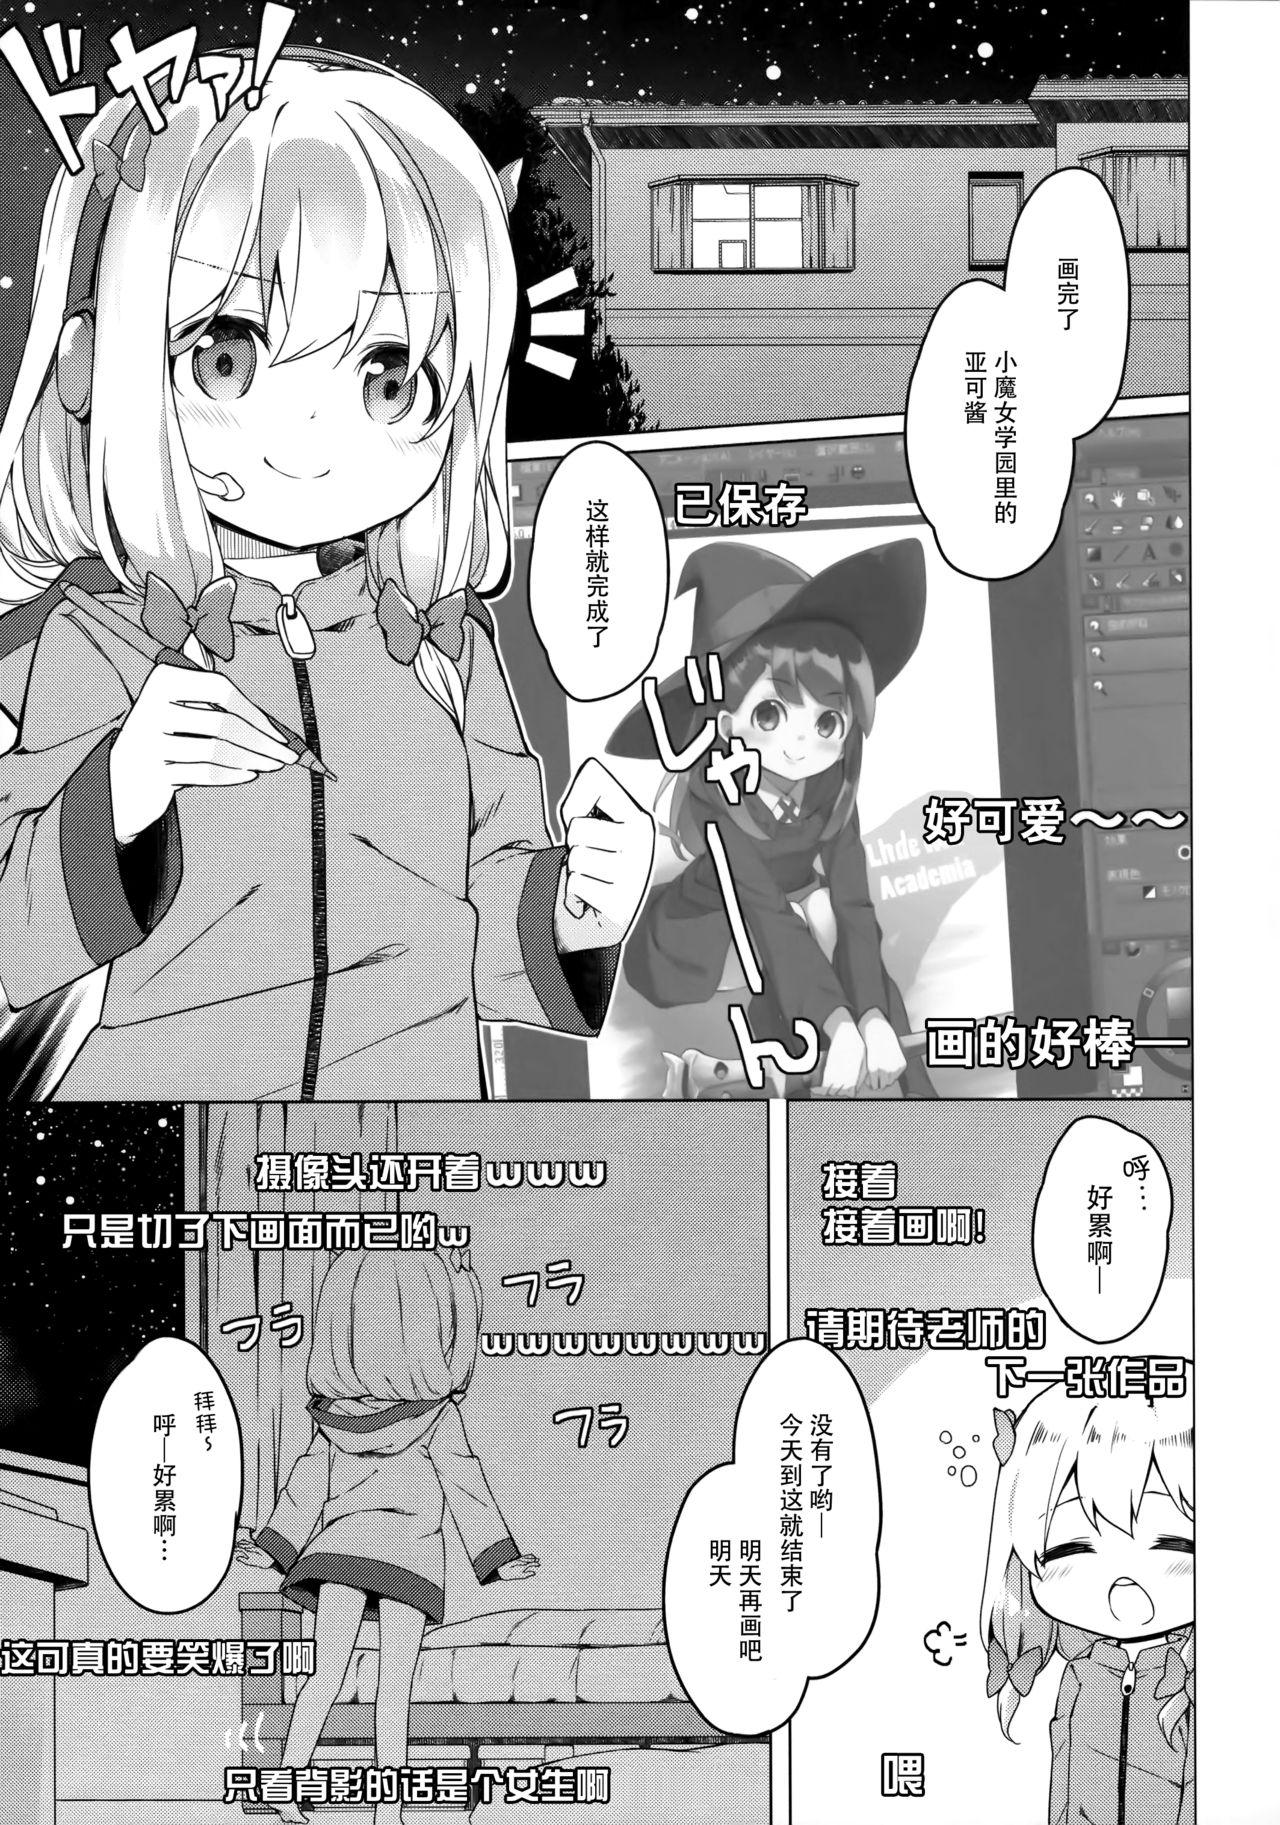 Amadora Yatta ne Sagiri-chan Shiryou ga Fueru ne! - Eromanga sensei Gaybukkake - Page 5